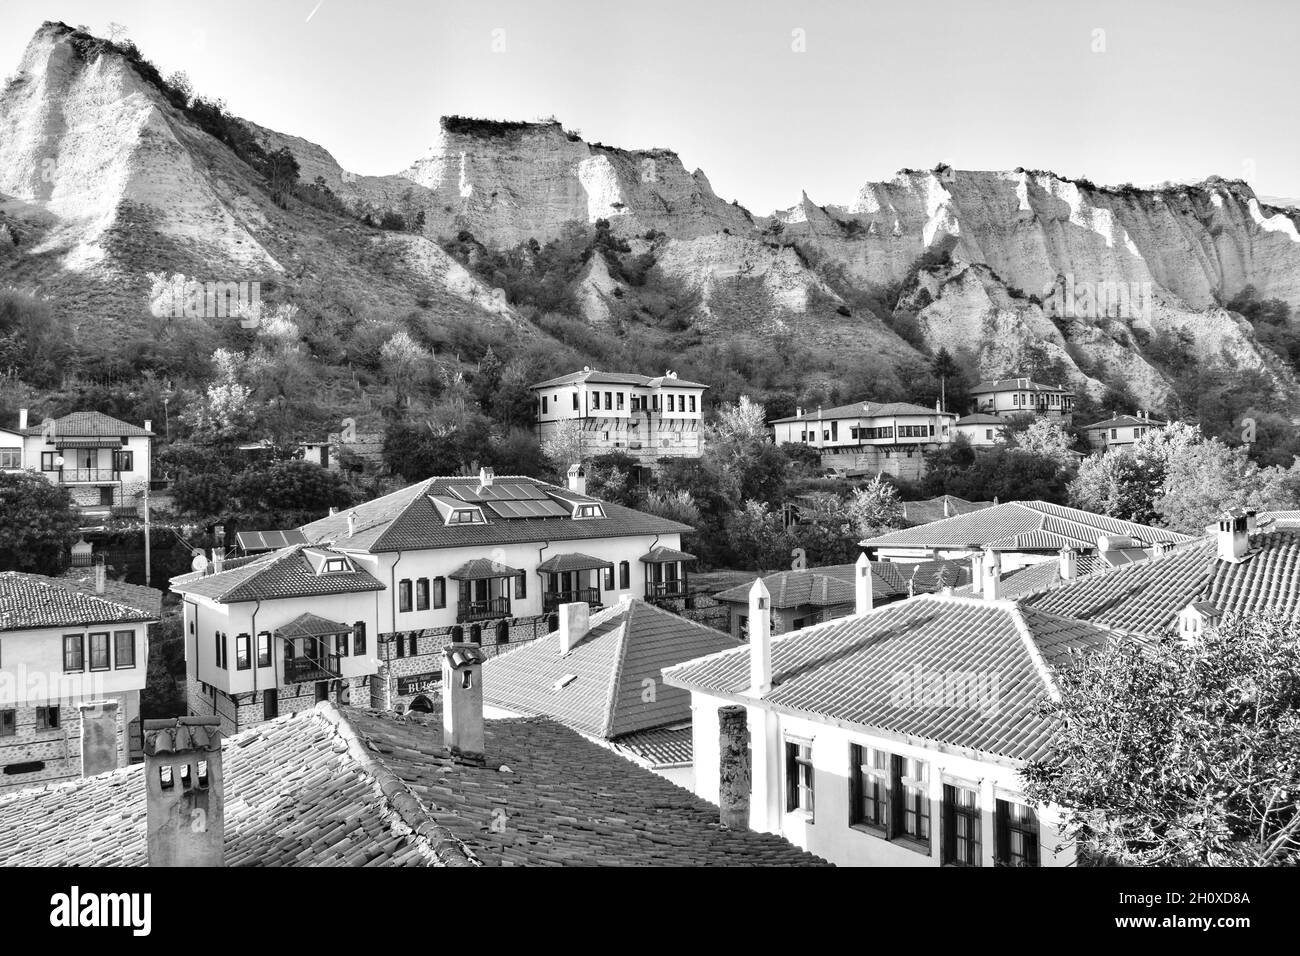 Melnik - la plus petite ville de Bulgarie, embrasée par le typique pour la zone des rochers.Magnifique paysage de la petite ville d'un point de vue élevé. Banque D'Images